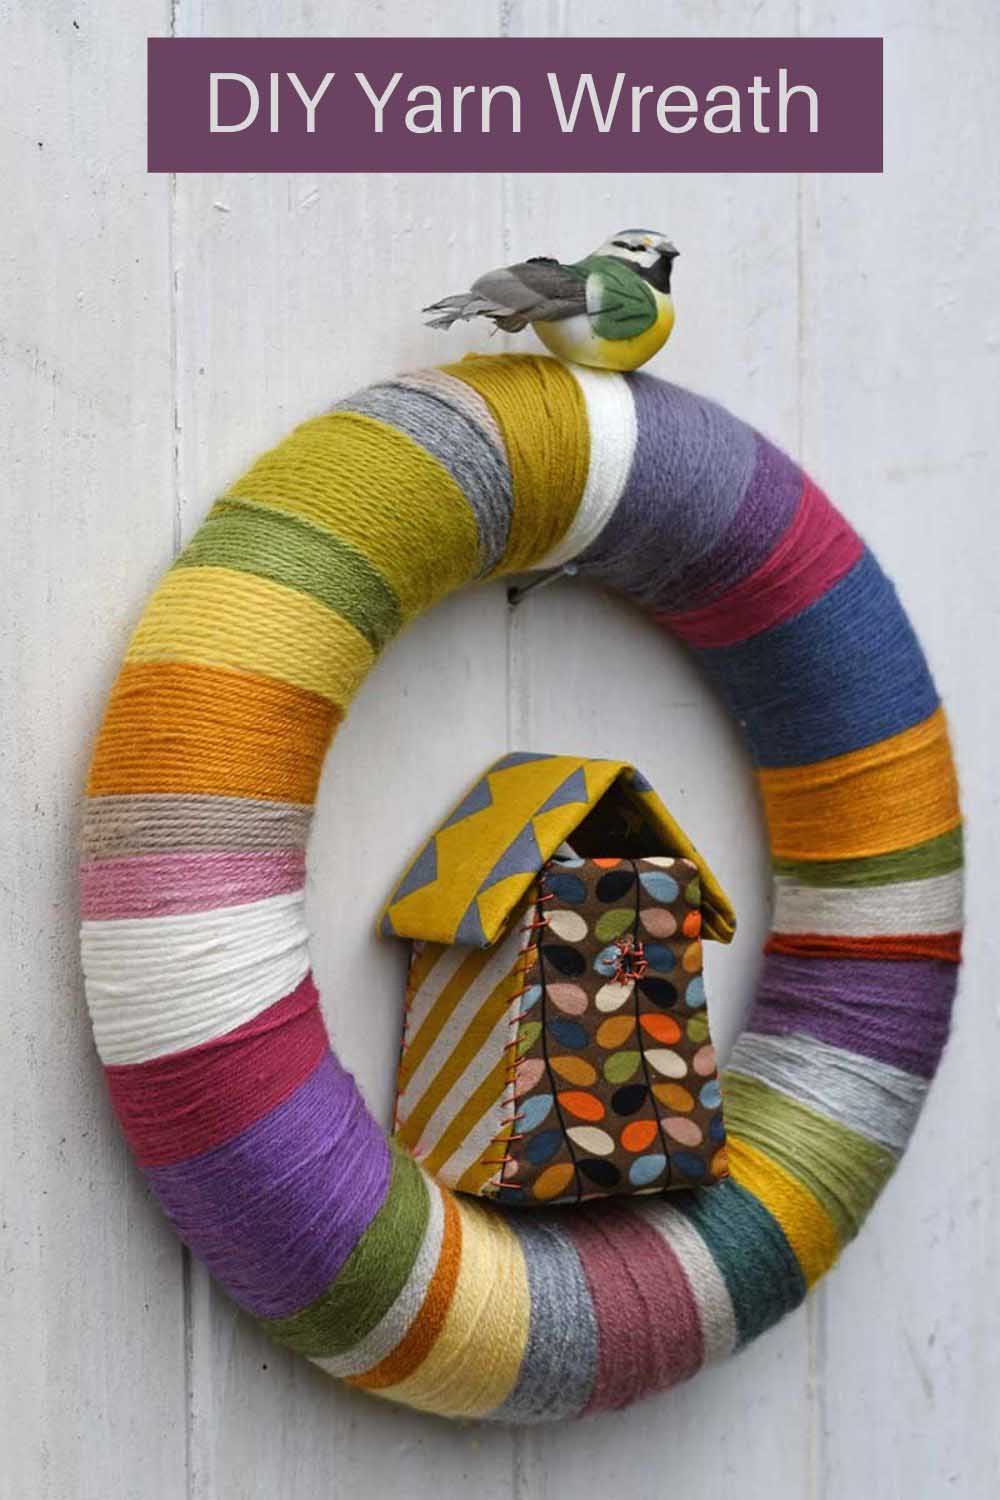 DIY yarn wreath